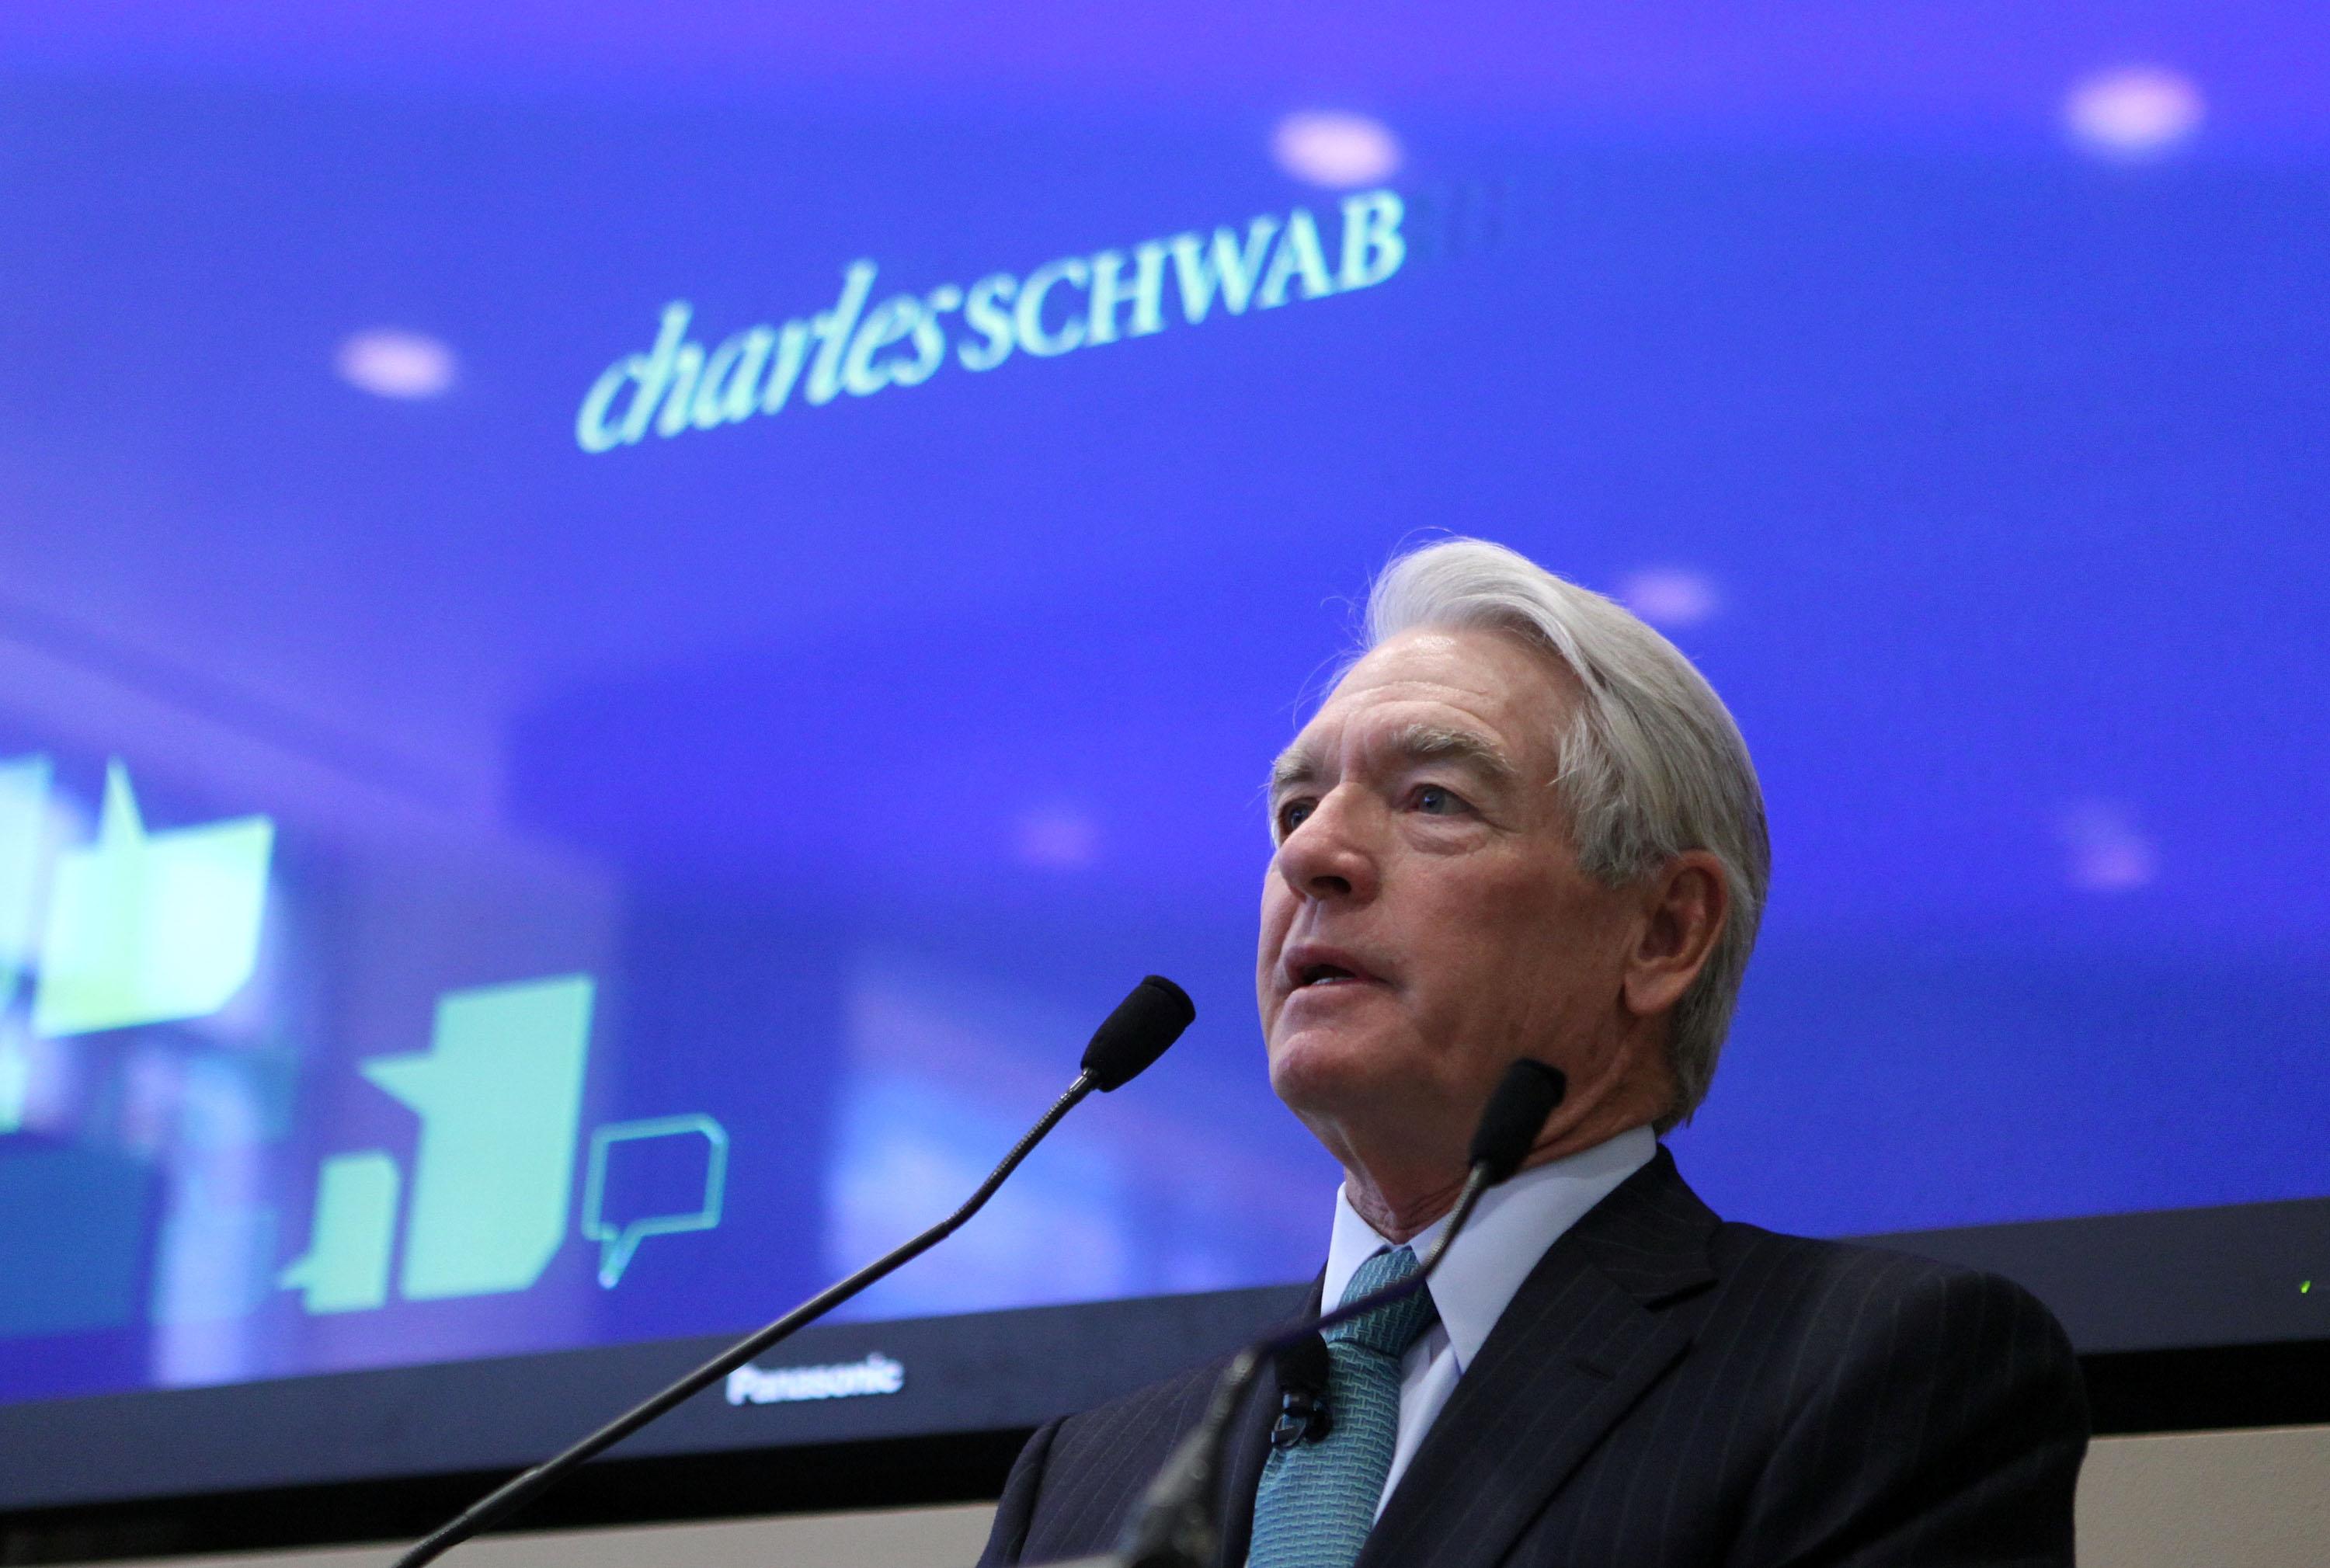 charles schwab investing reviews on wen